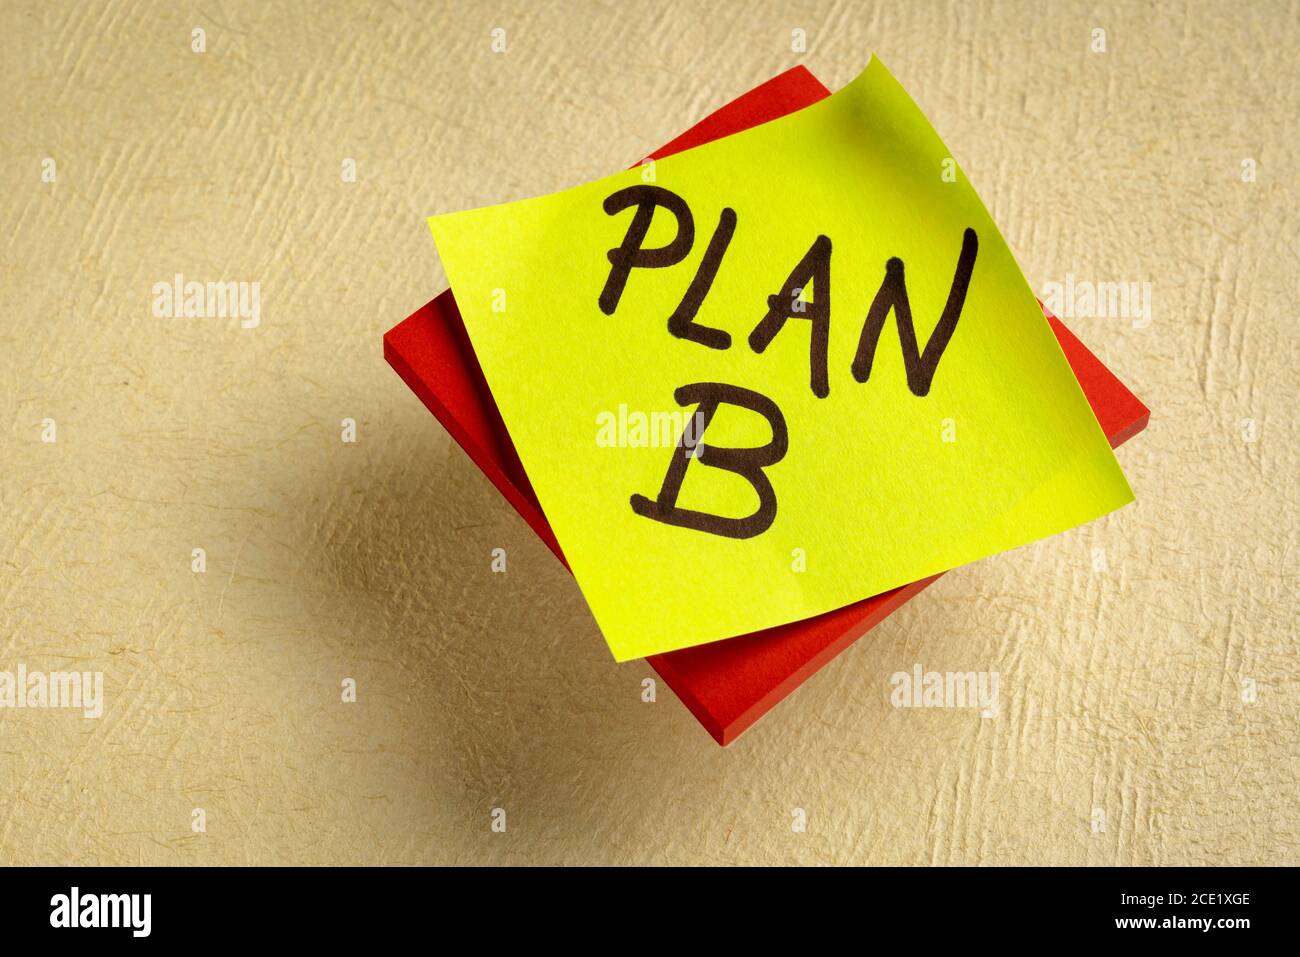 Plan B - écriture manuscrite sur une note de rappel, changement de plans et d'objectifs professionnels ou personnels Banque D'Images